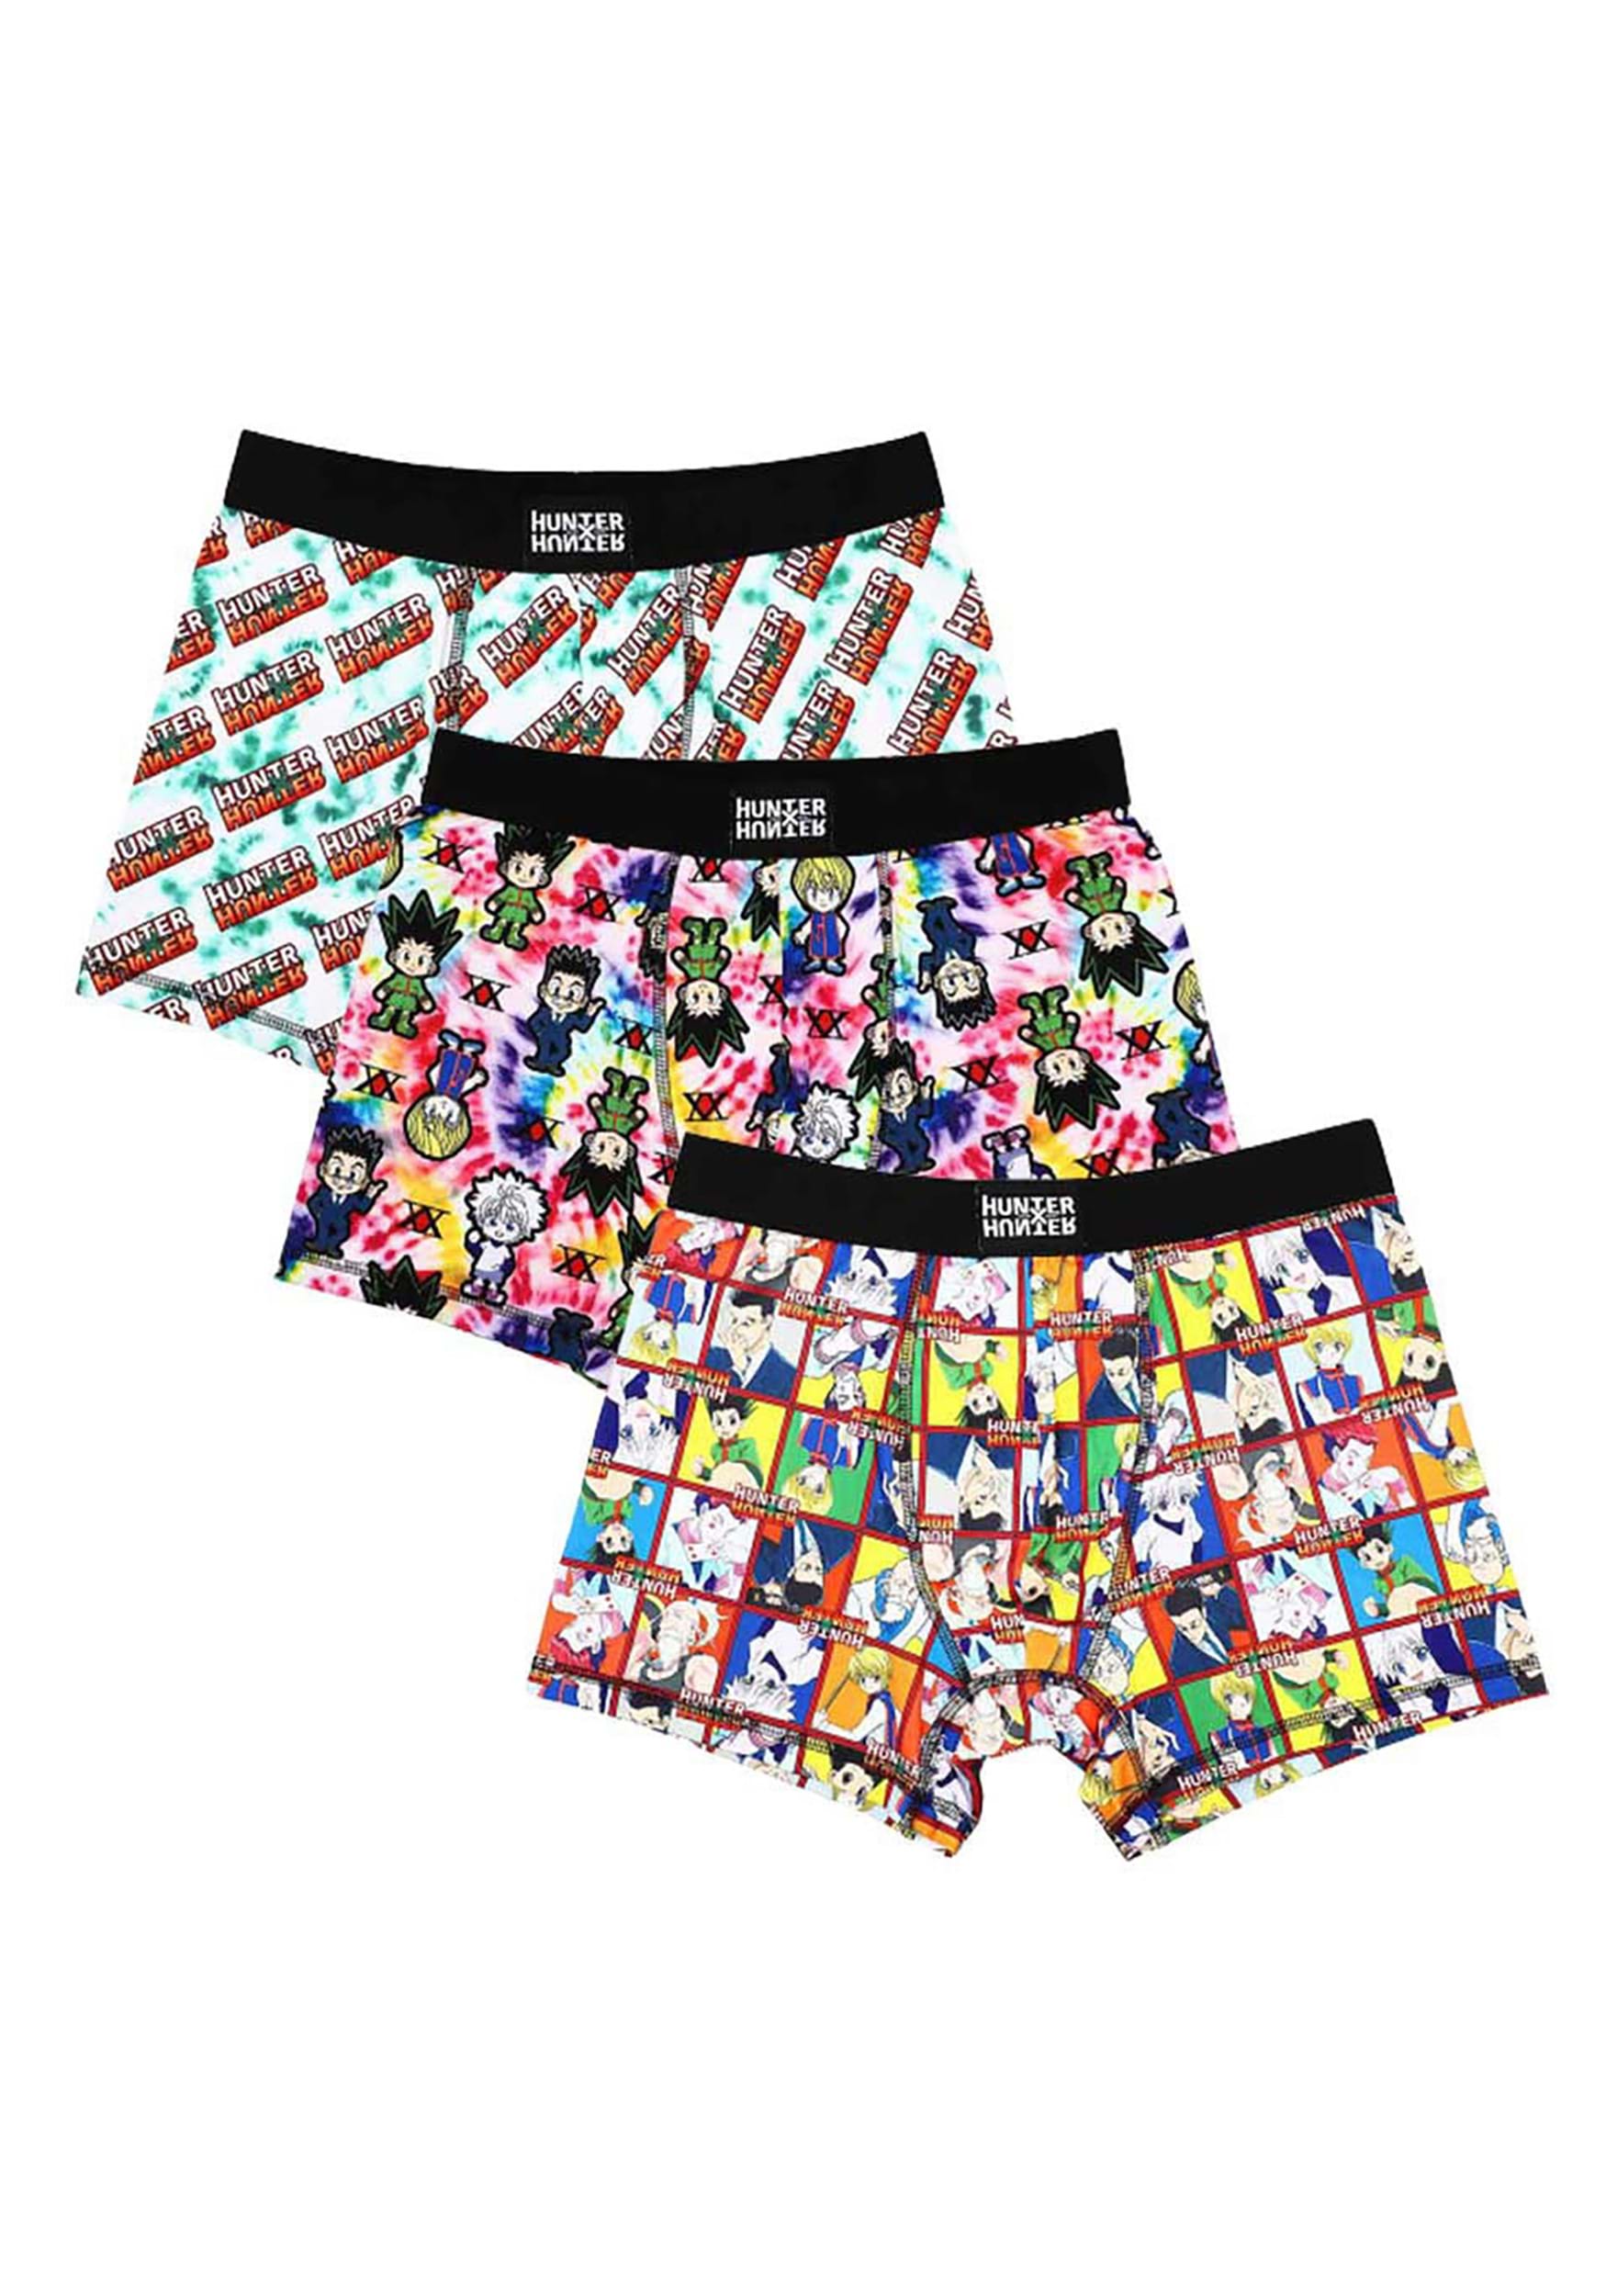 Minecraft Dungeons Boys' Boxer Briefs Underwear Size 4 XS Athletic